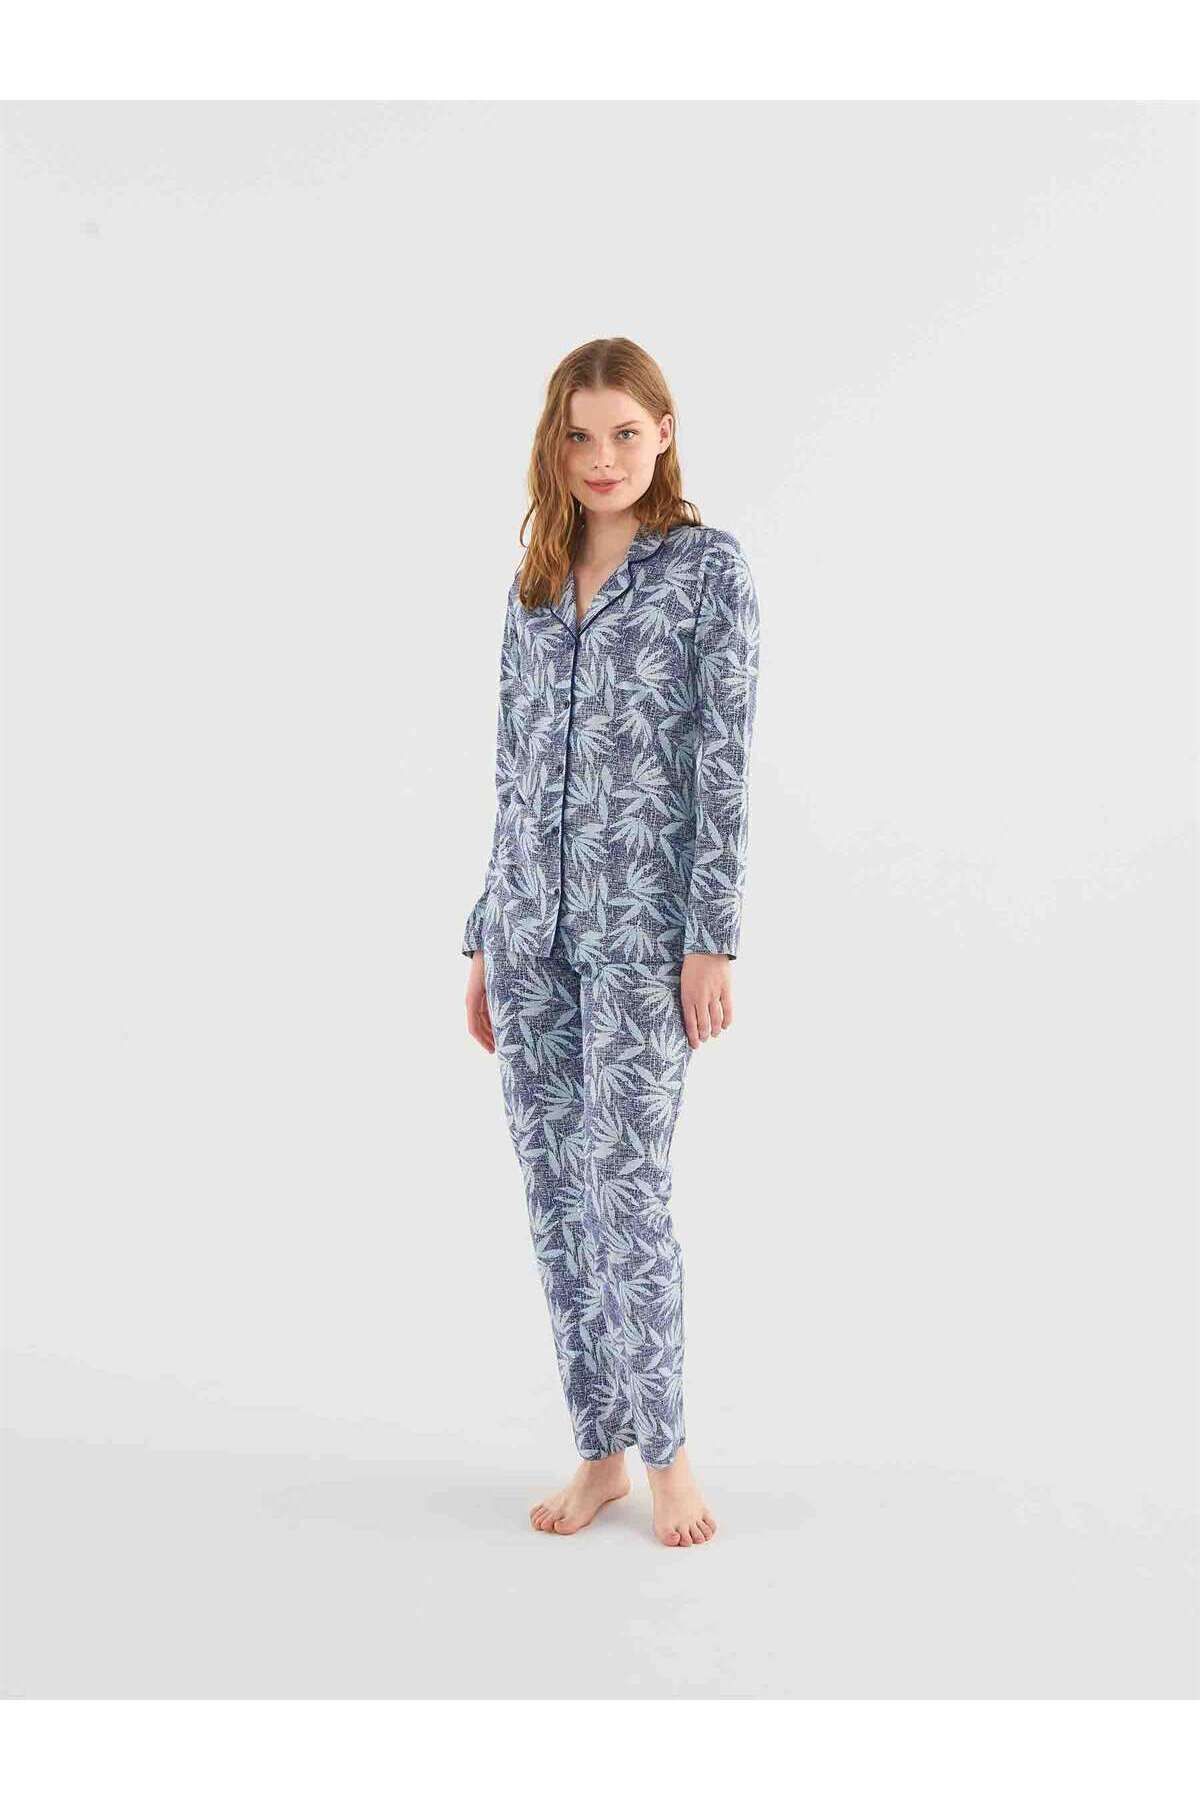 Mod Collection Kadın Mavi Boydan Patlı Pijama Takım